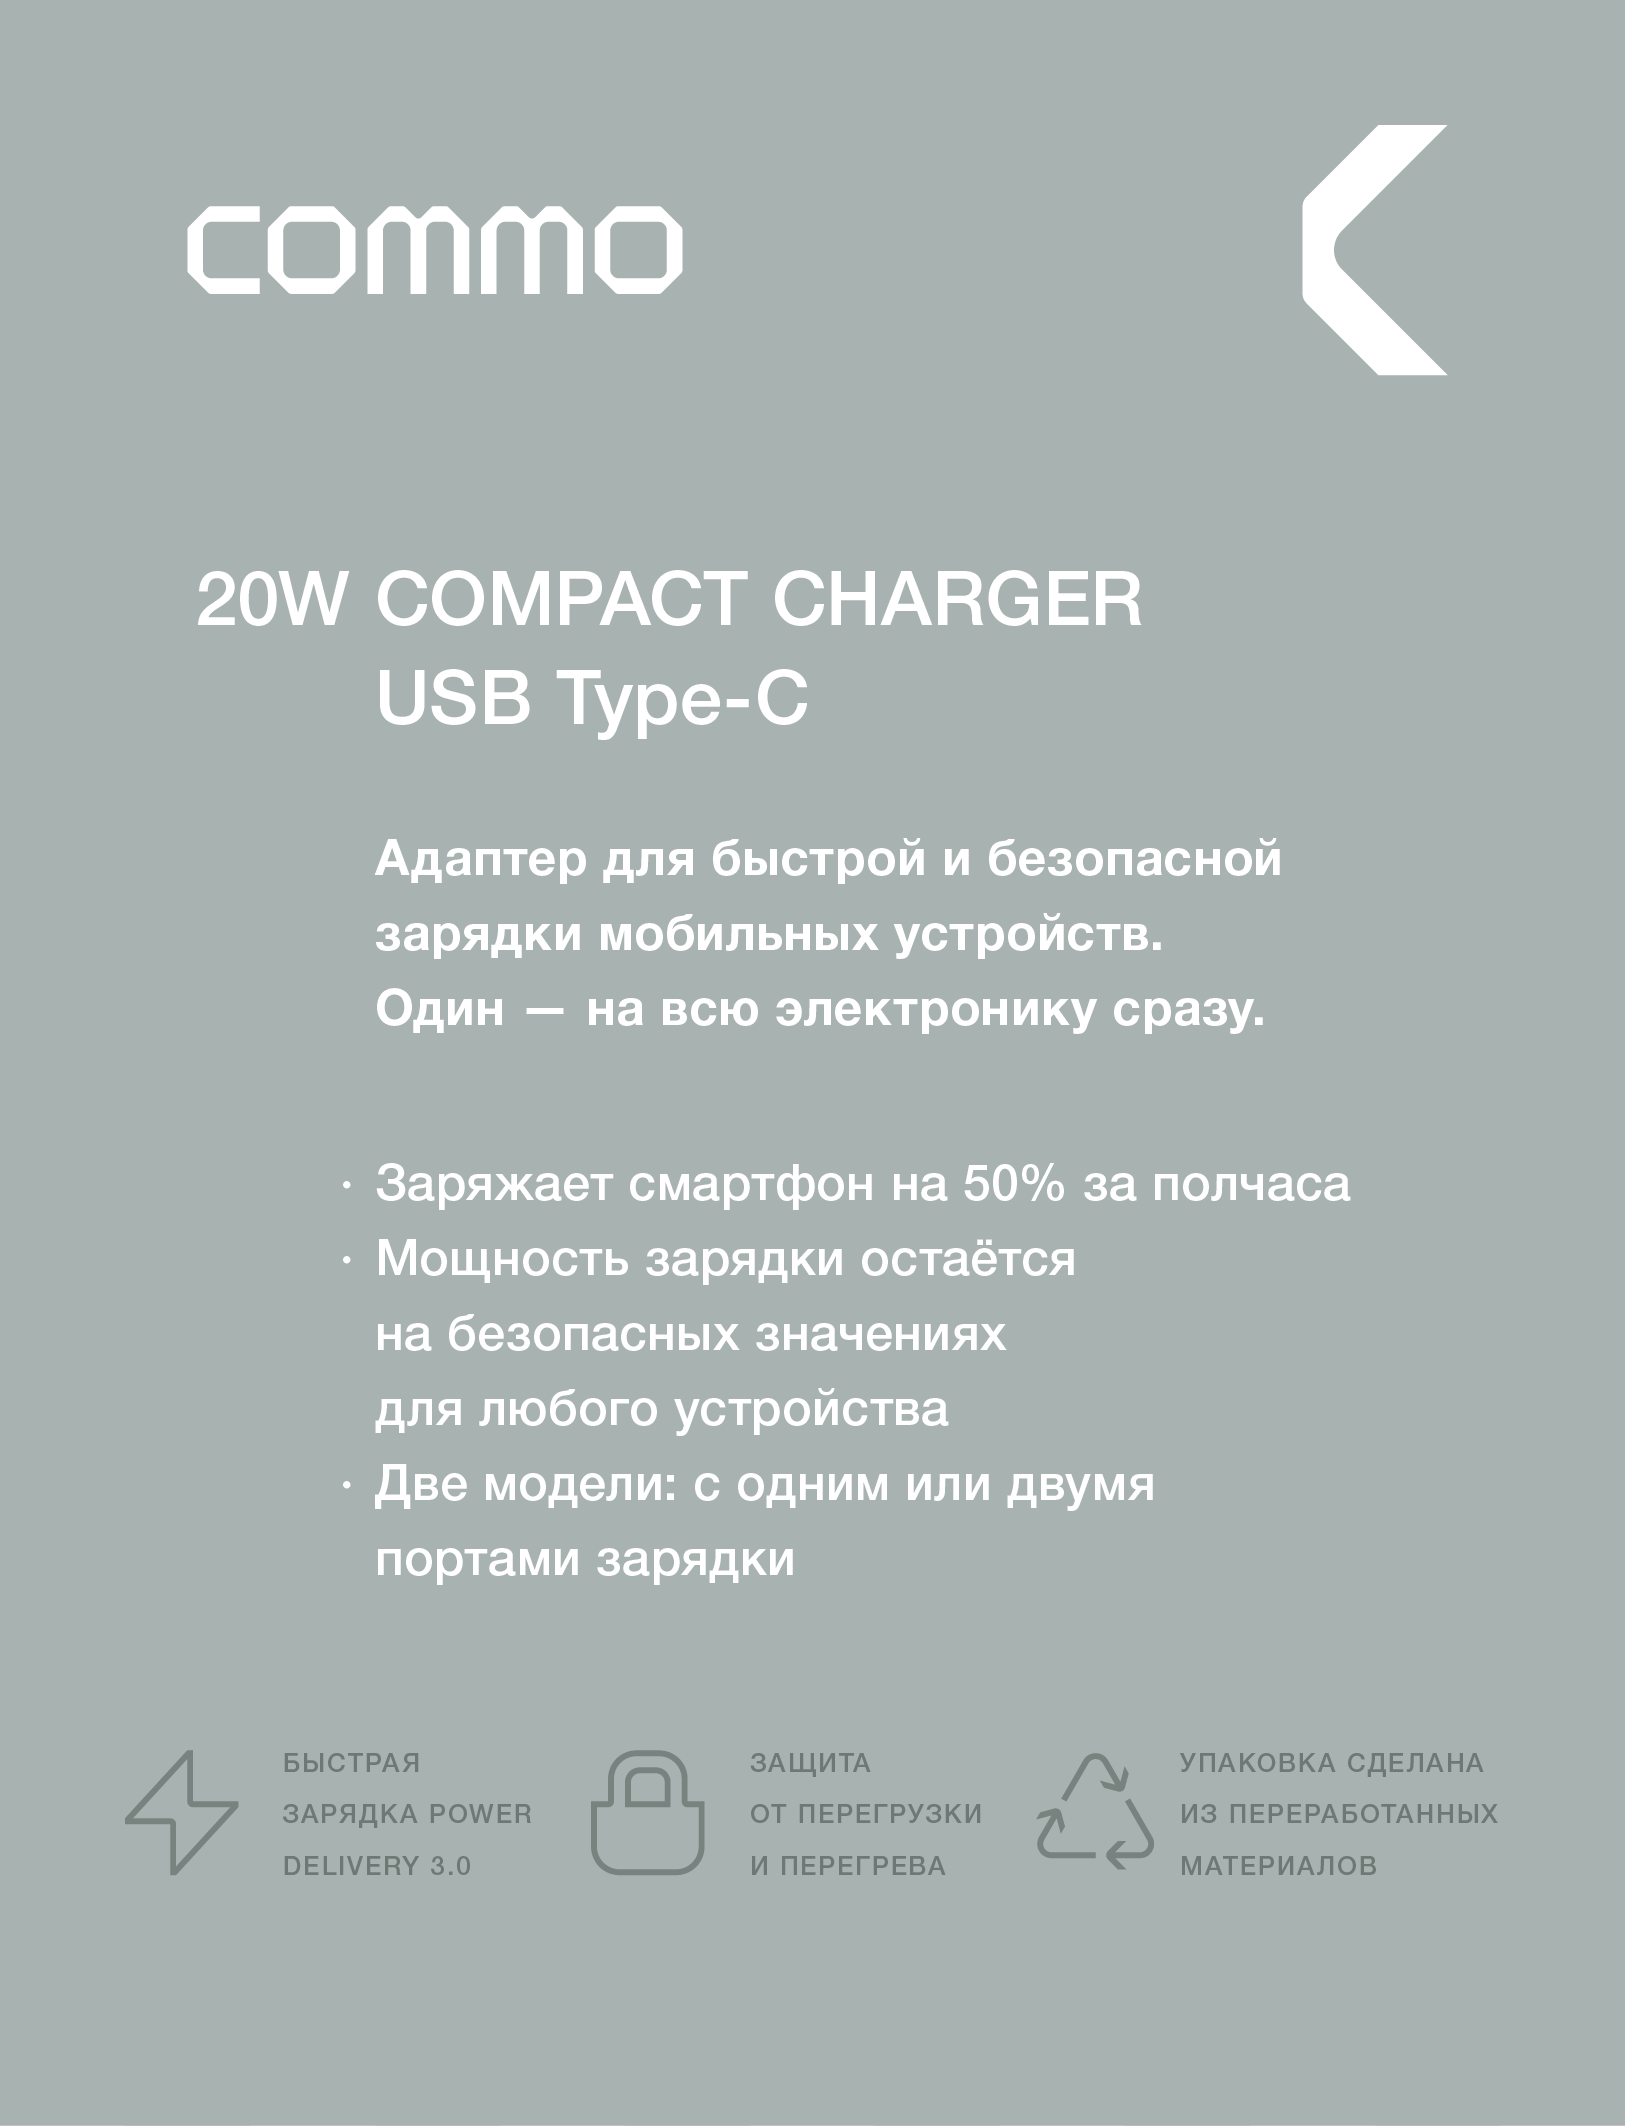 Быстрое зарядное устройство COMMO 20W Compact Charger USB-C 20 Вт